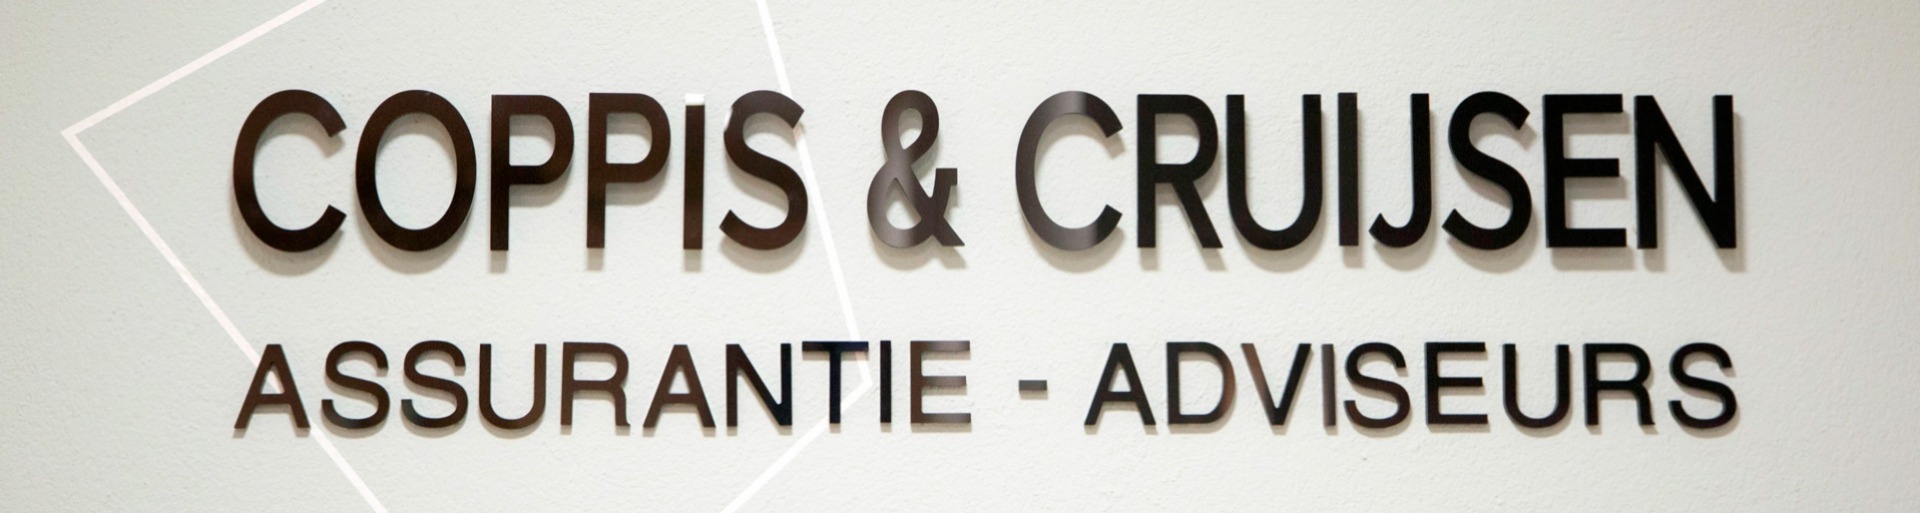 Het logo van Coppis & Cruijsen